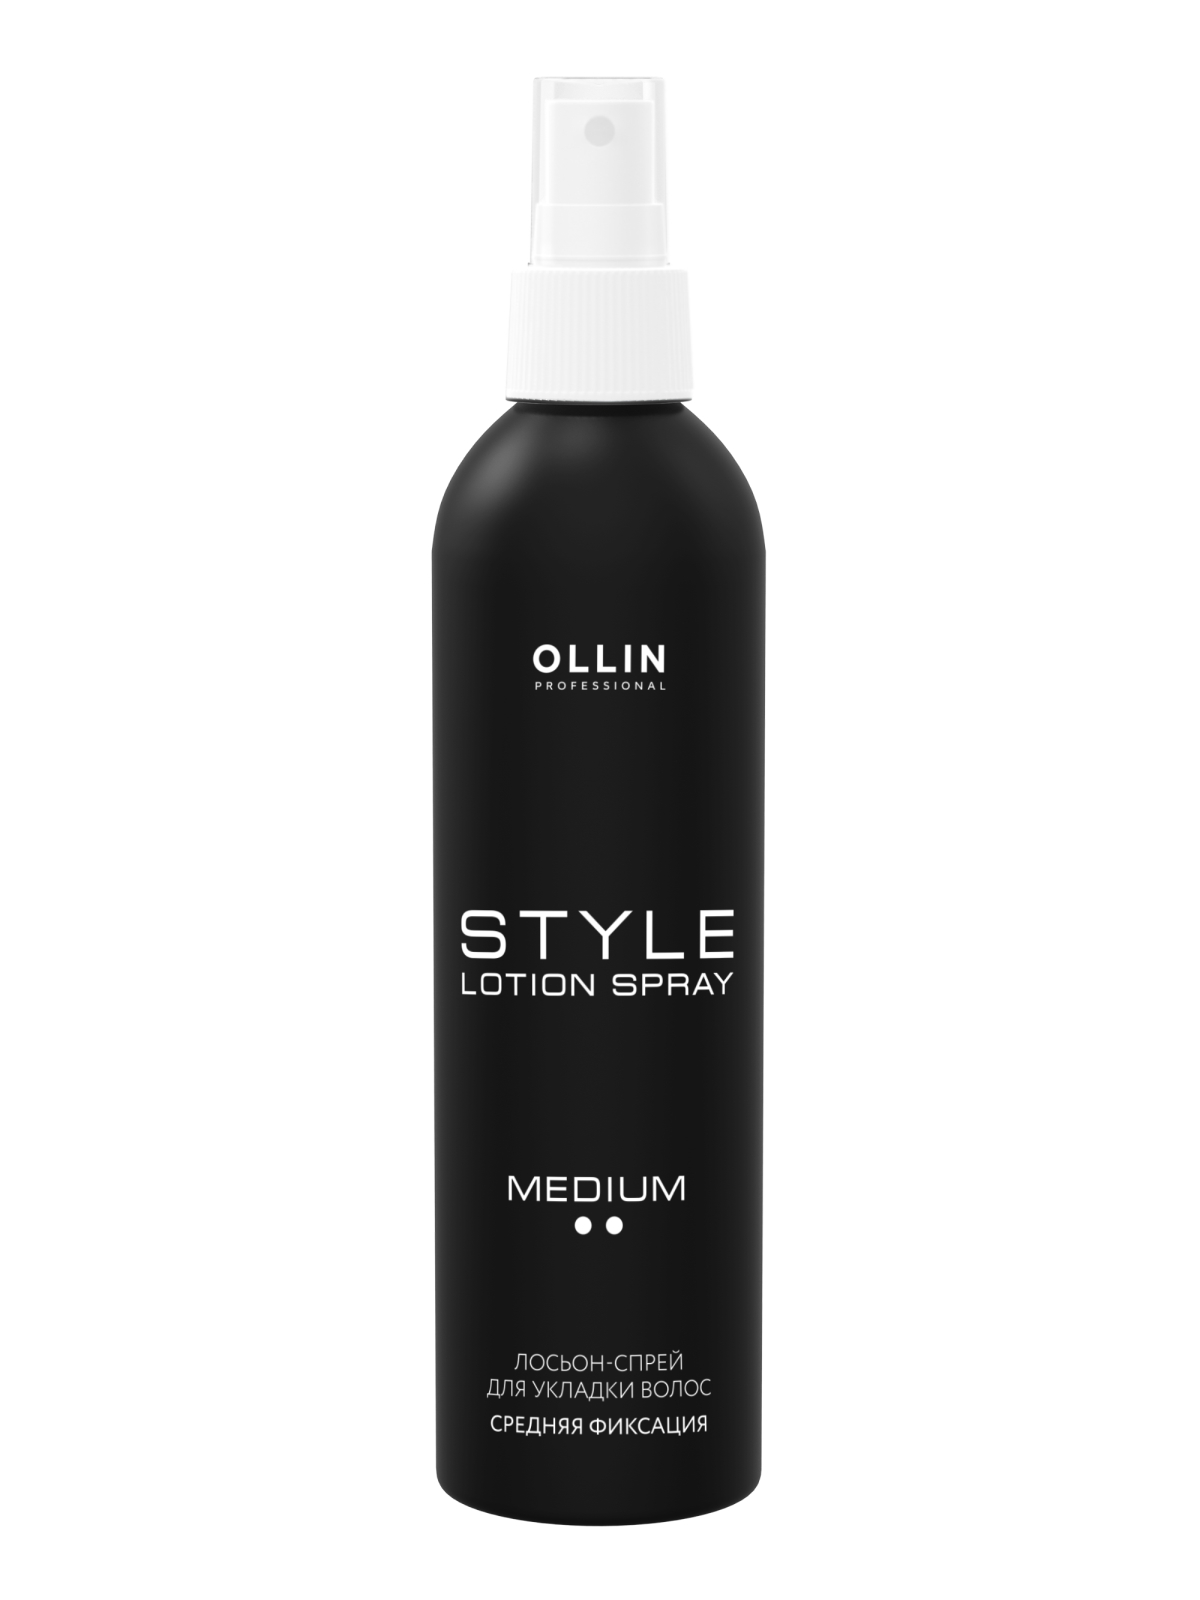 Купить Средство для укладки волос Ollin Professional средней фиксации 250 мл, Lotion-Spray Medium